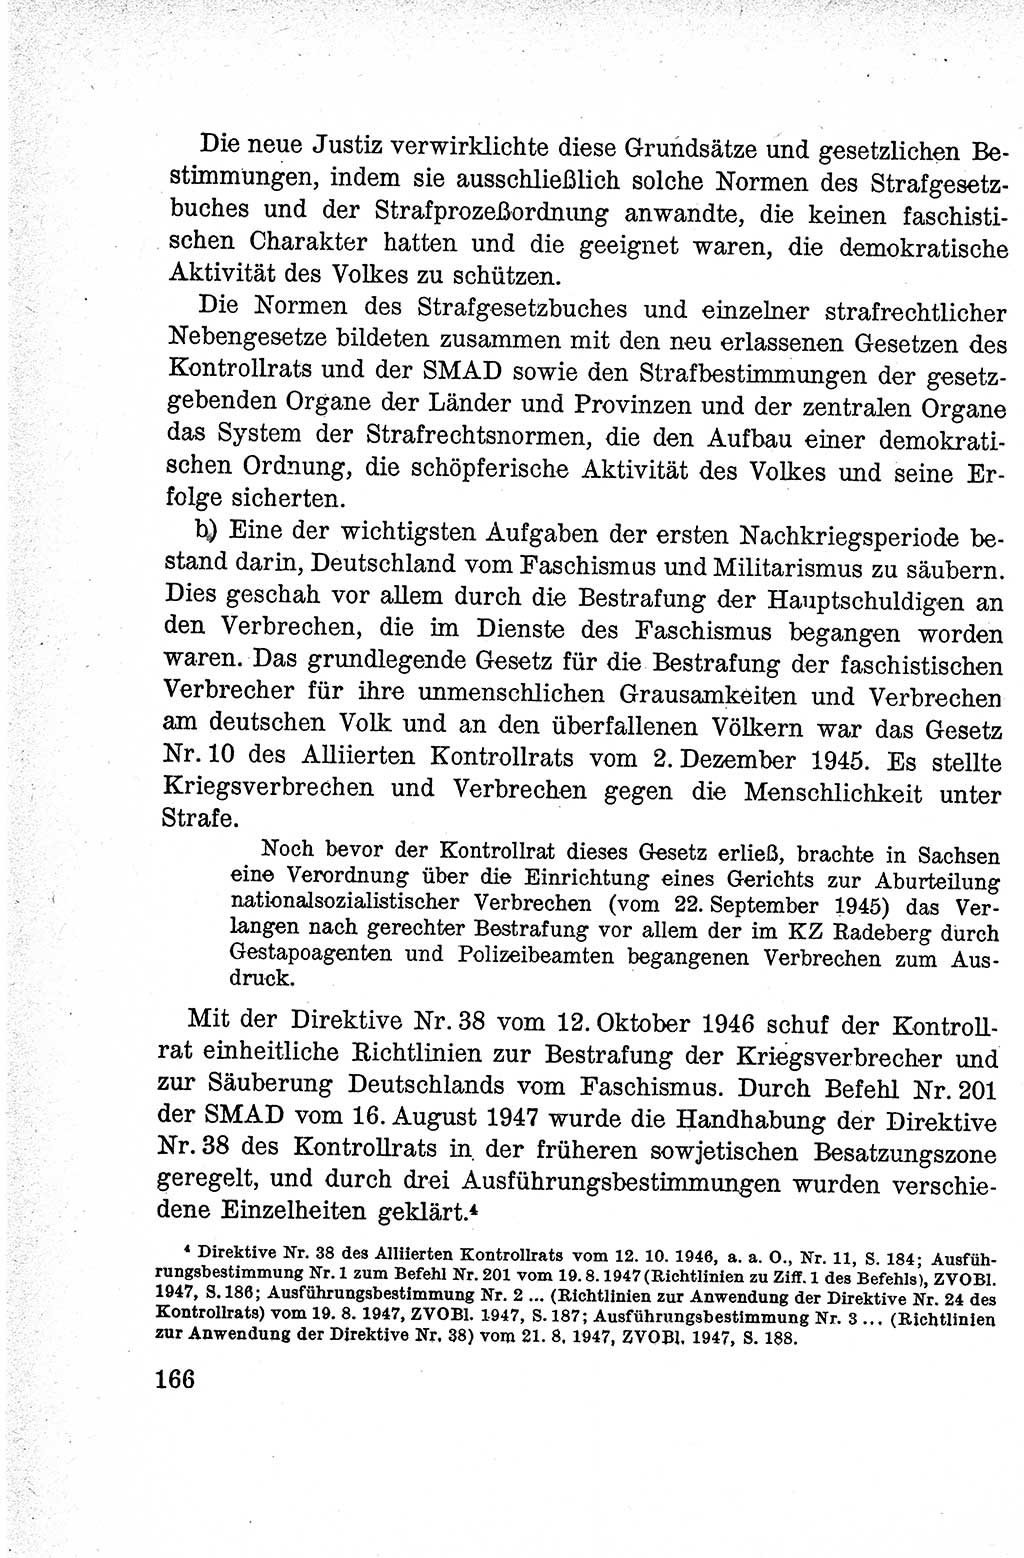 Lehrbuch des Strafrechts der Deutschen Demokratischen Republik (DDR), Allgemeiner Teil 1959, Seite 166 (Lb. Strafr. DDR AT 1959, S. 166)